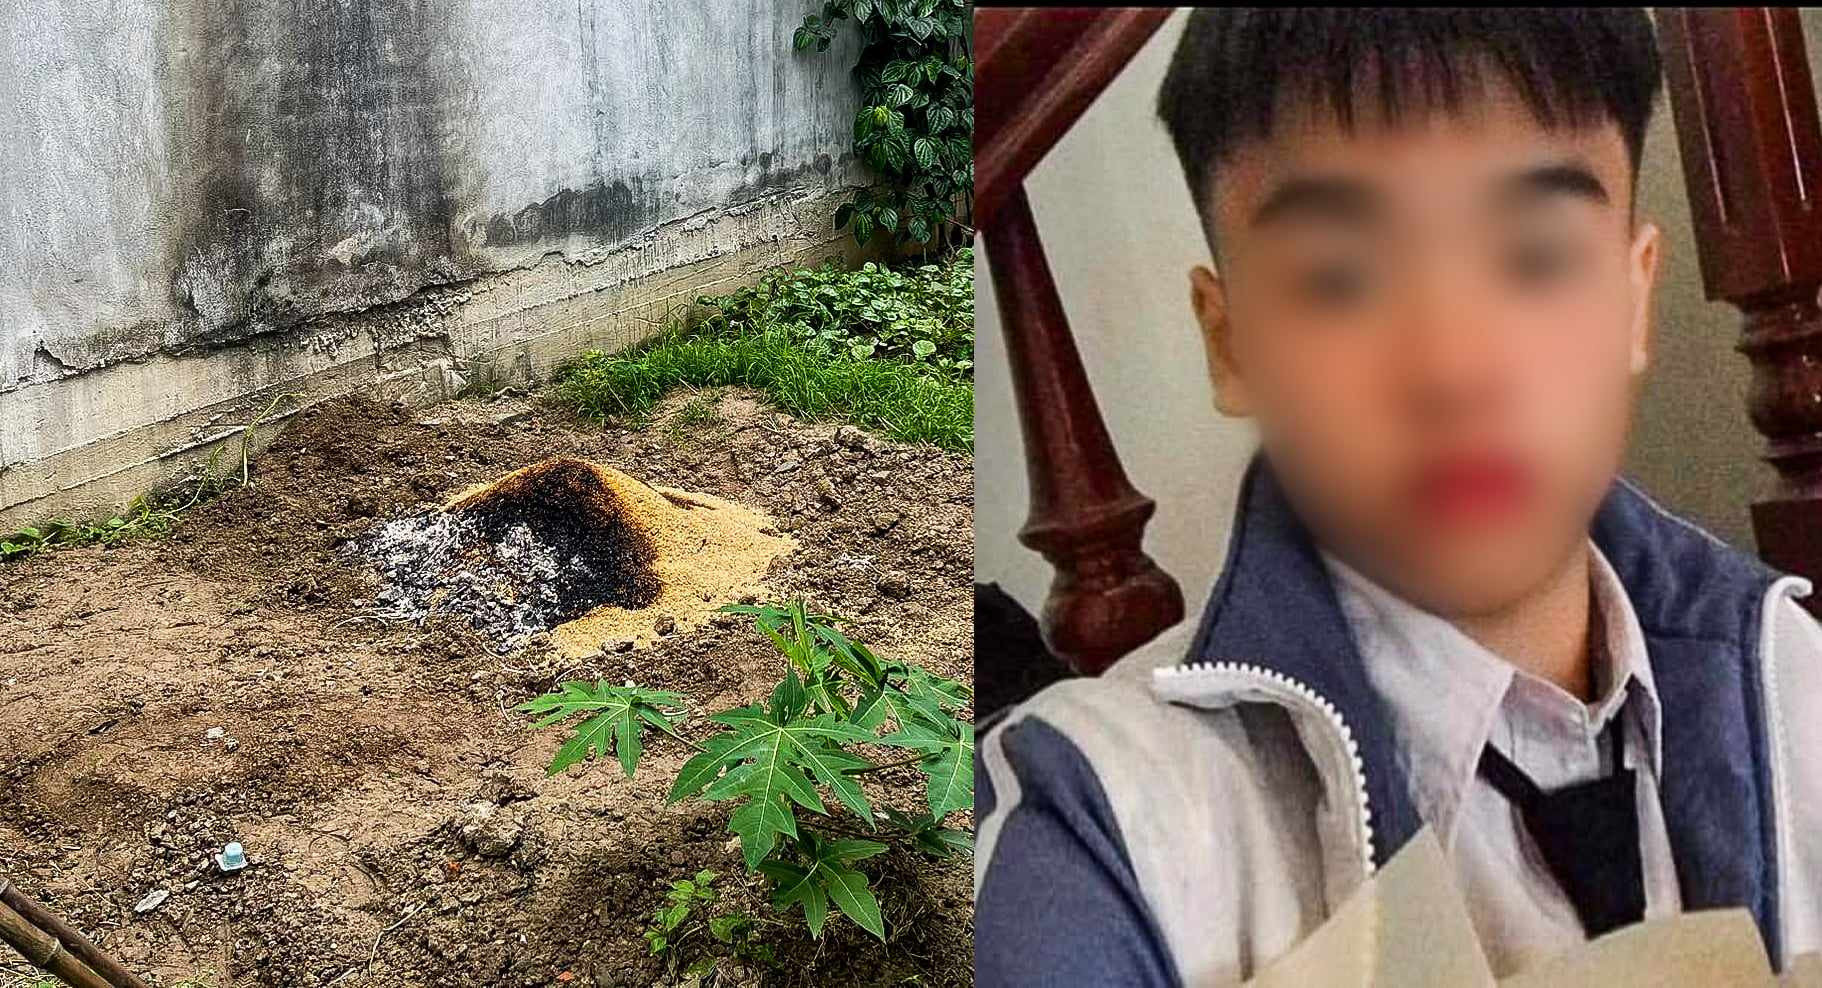 Hé lộ nguyên nhân thiếu nữ 15 tuổi ở Hải Phòng bị bạn trai sát hại, chôn thi thể trong vườn - Ảnh 1